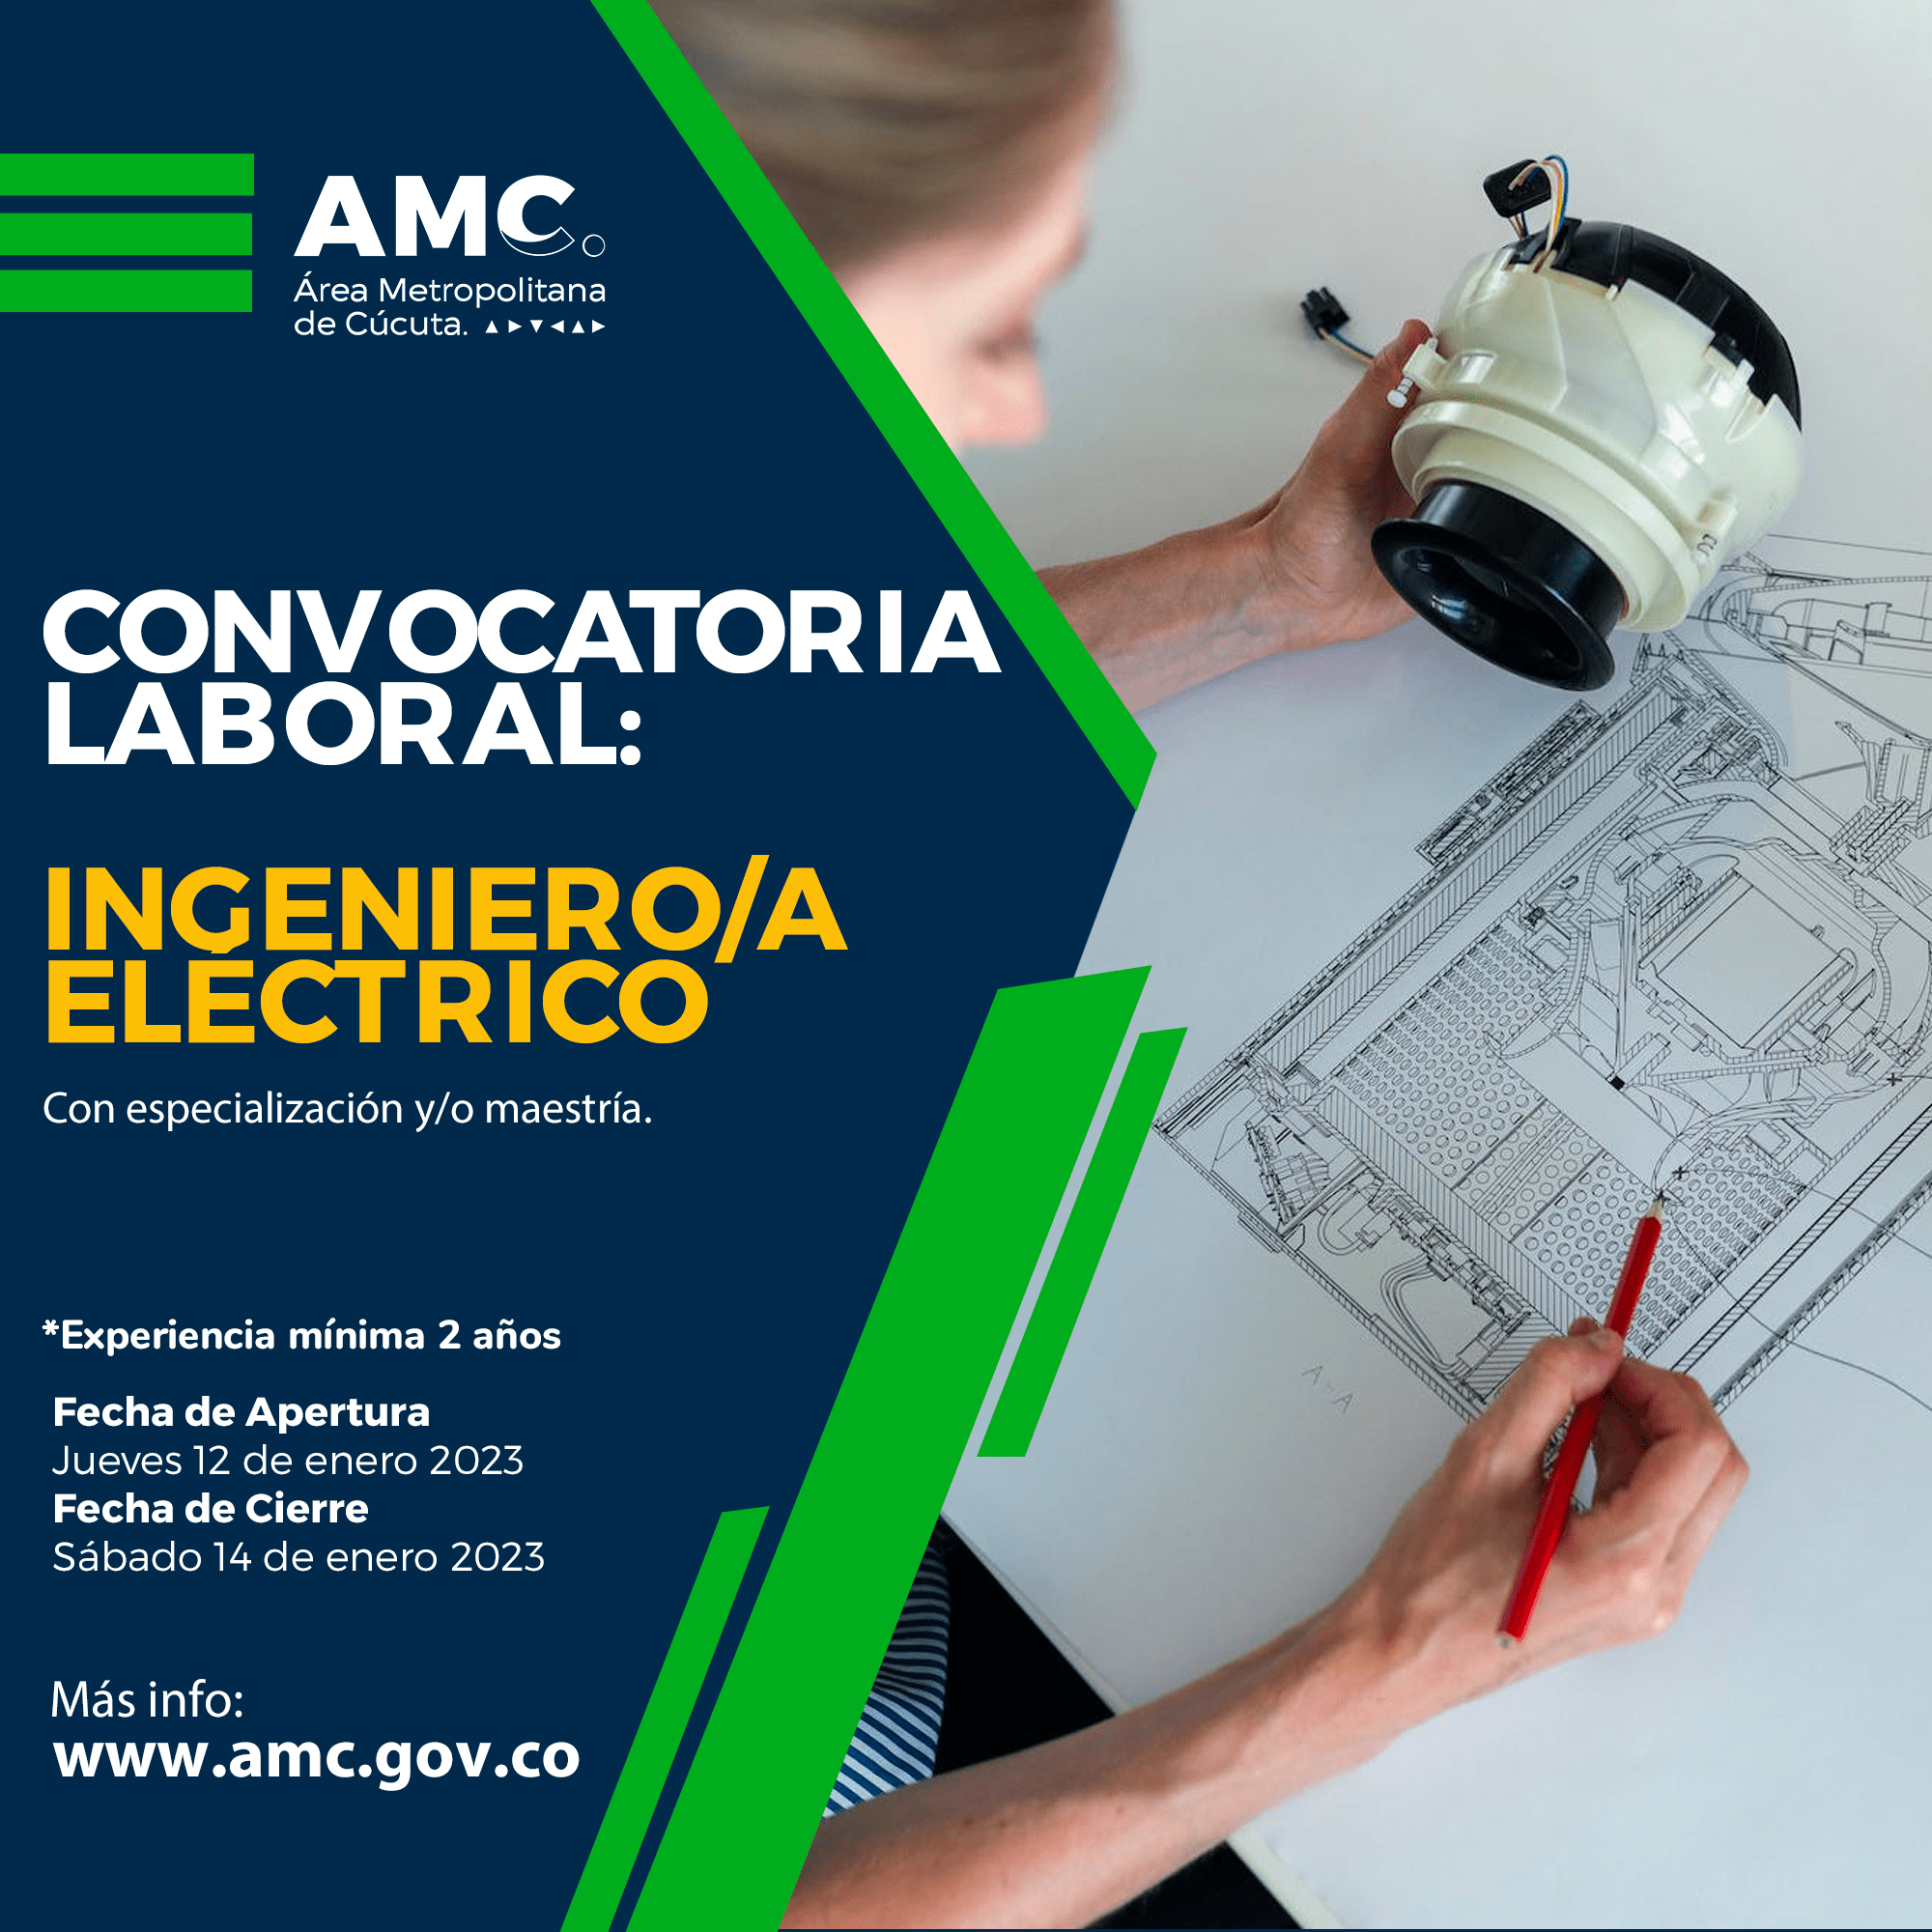 Convocatoria laboral para Ingeniero Electrico en el Área Metropolitana de Cúcuta